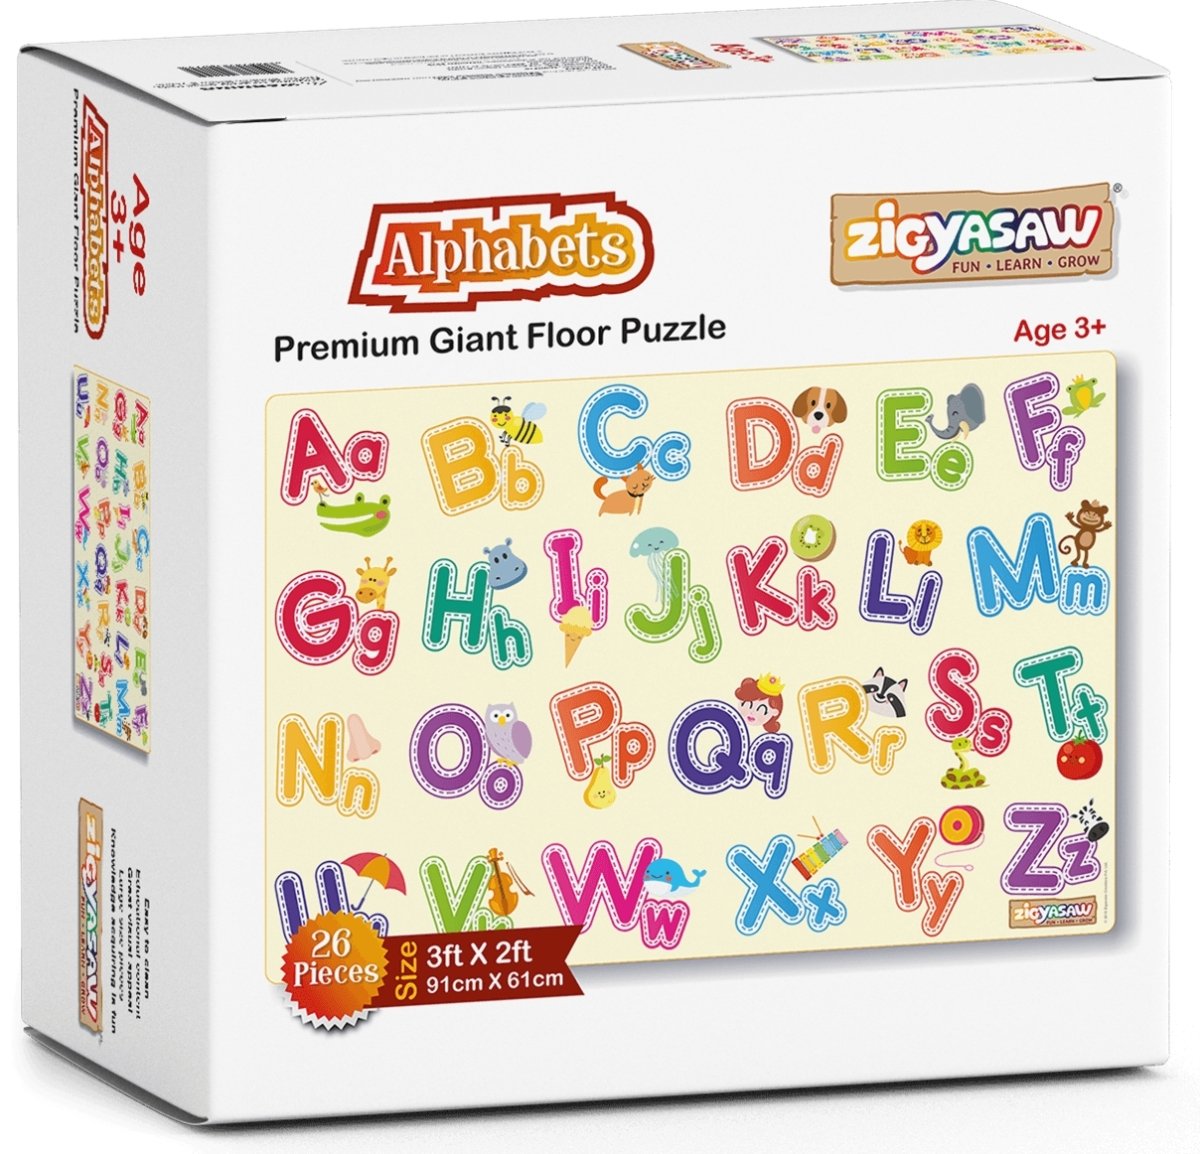 English Alphabet floor puzzle game